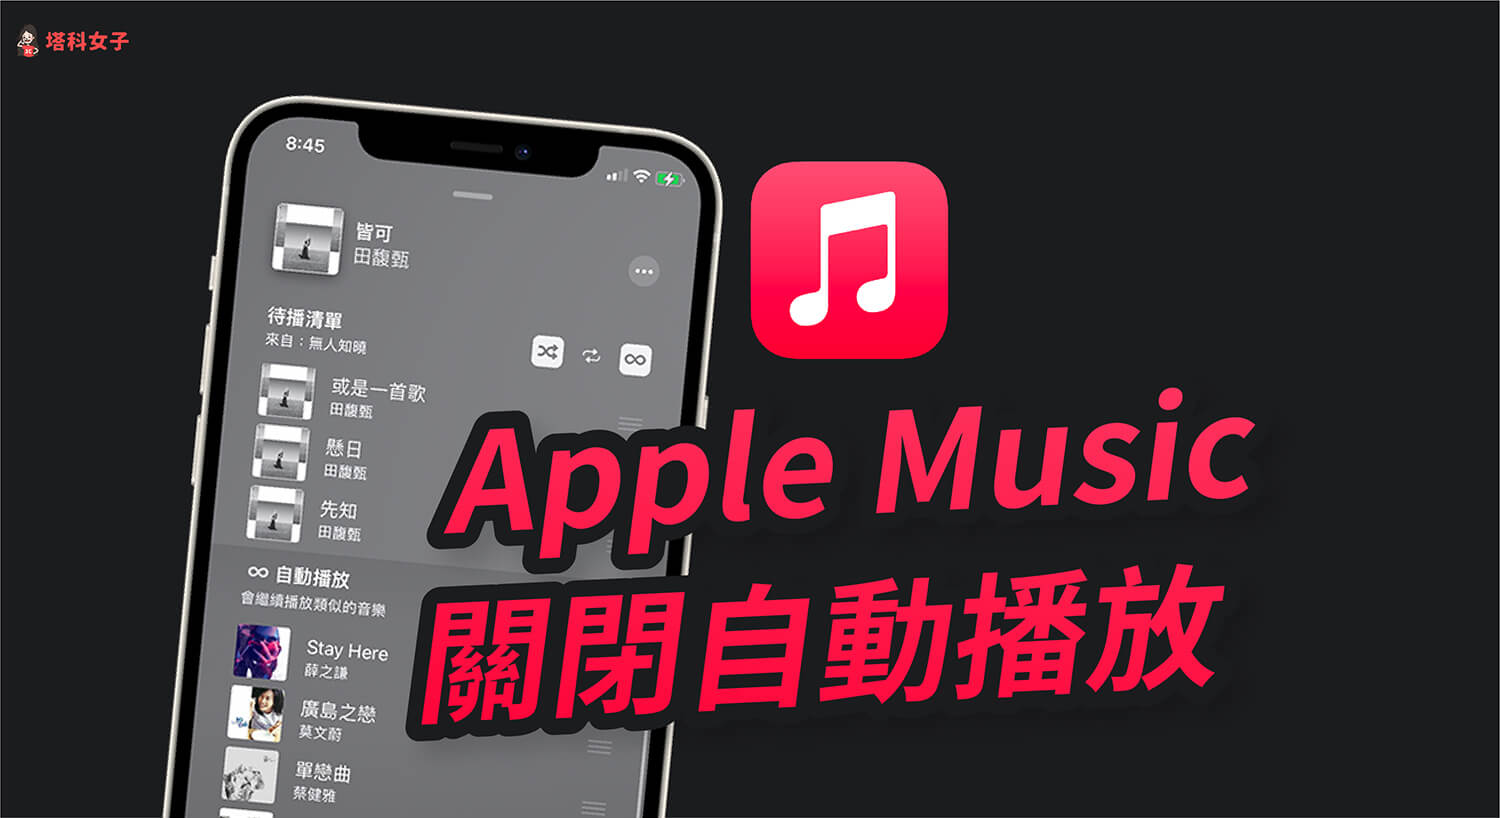 Apple Music 如何關閉自動播放功能？避免系統播放推薦的類似歌曲